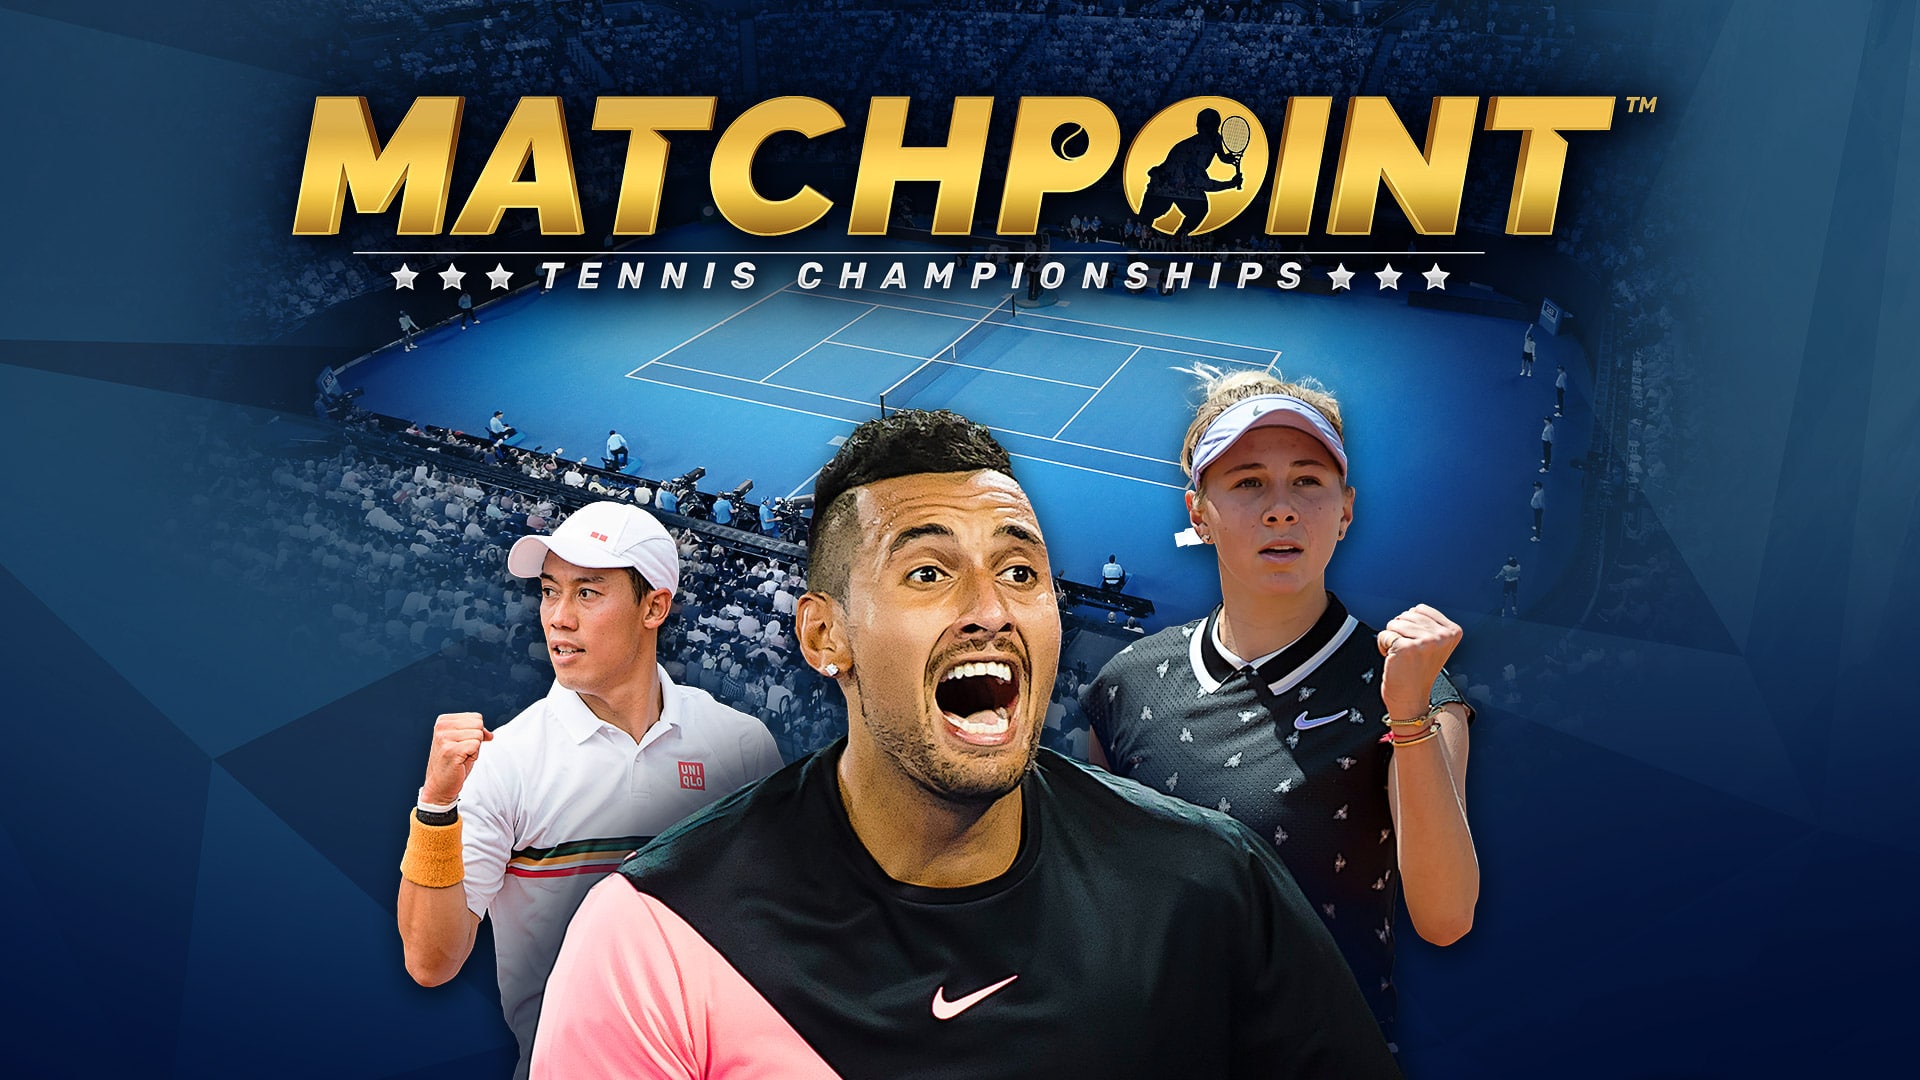 Matchpoint-Tennis-Championships-erzielt-eine-Million-Downloads